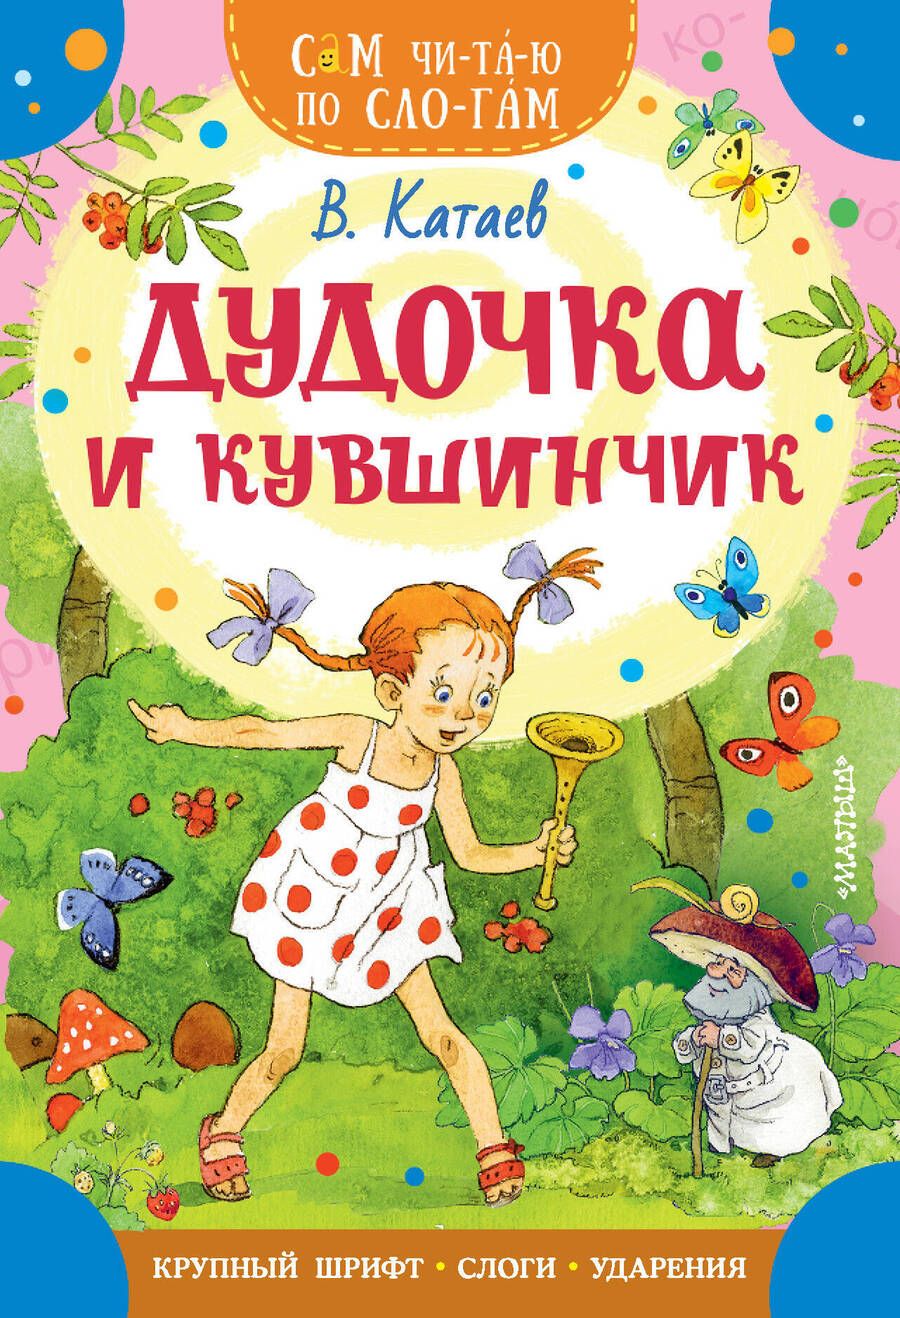 Обложка книги "Катаев: Дудочка и кувшинчик"